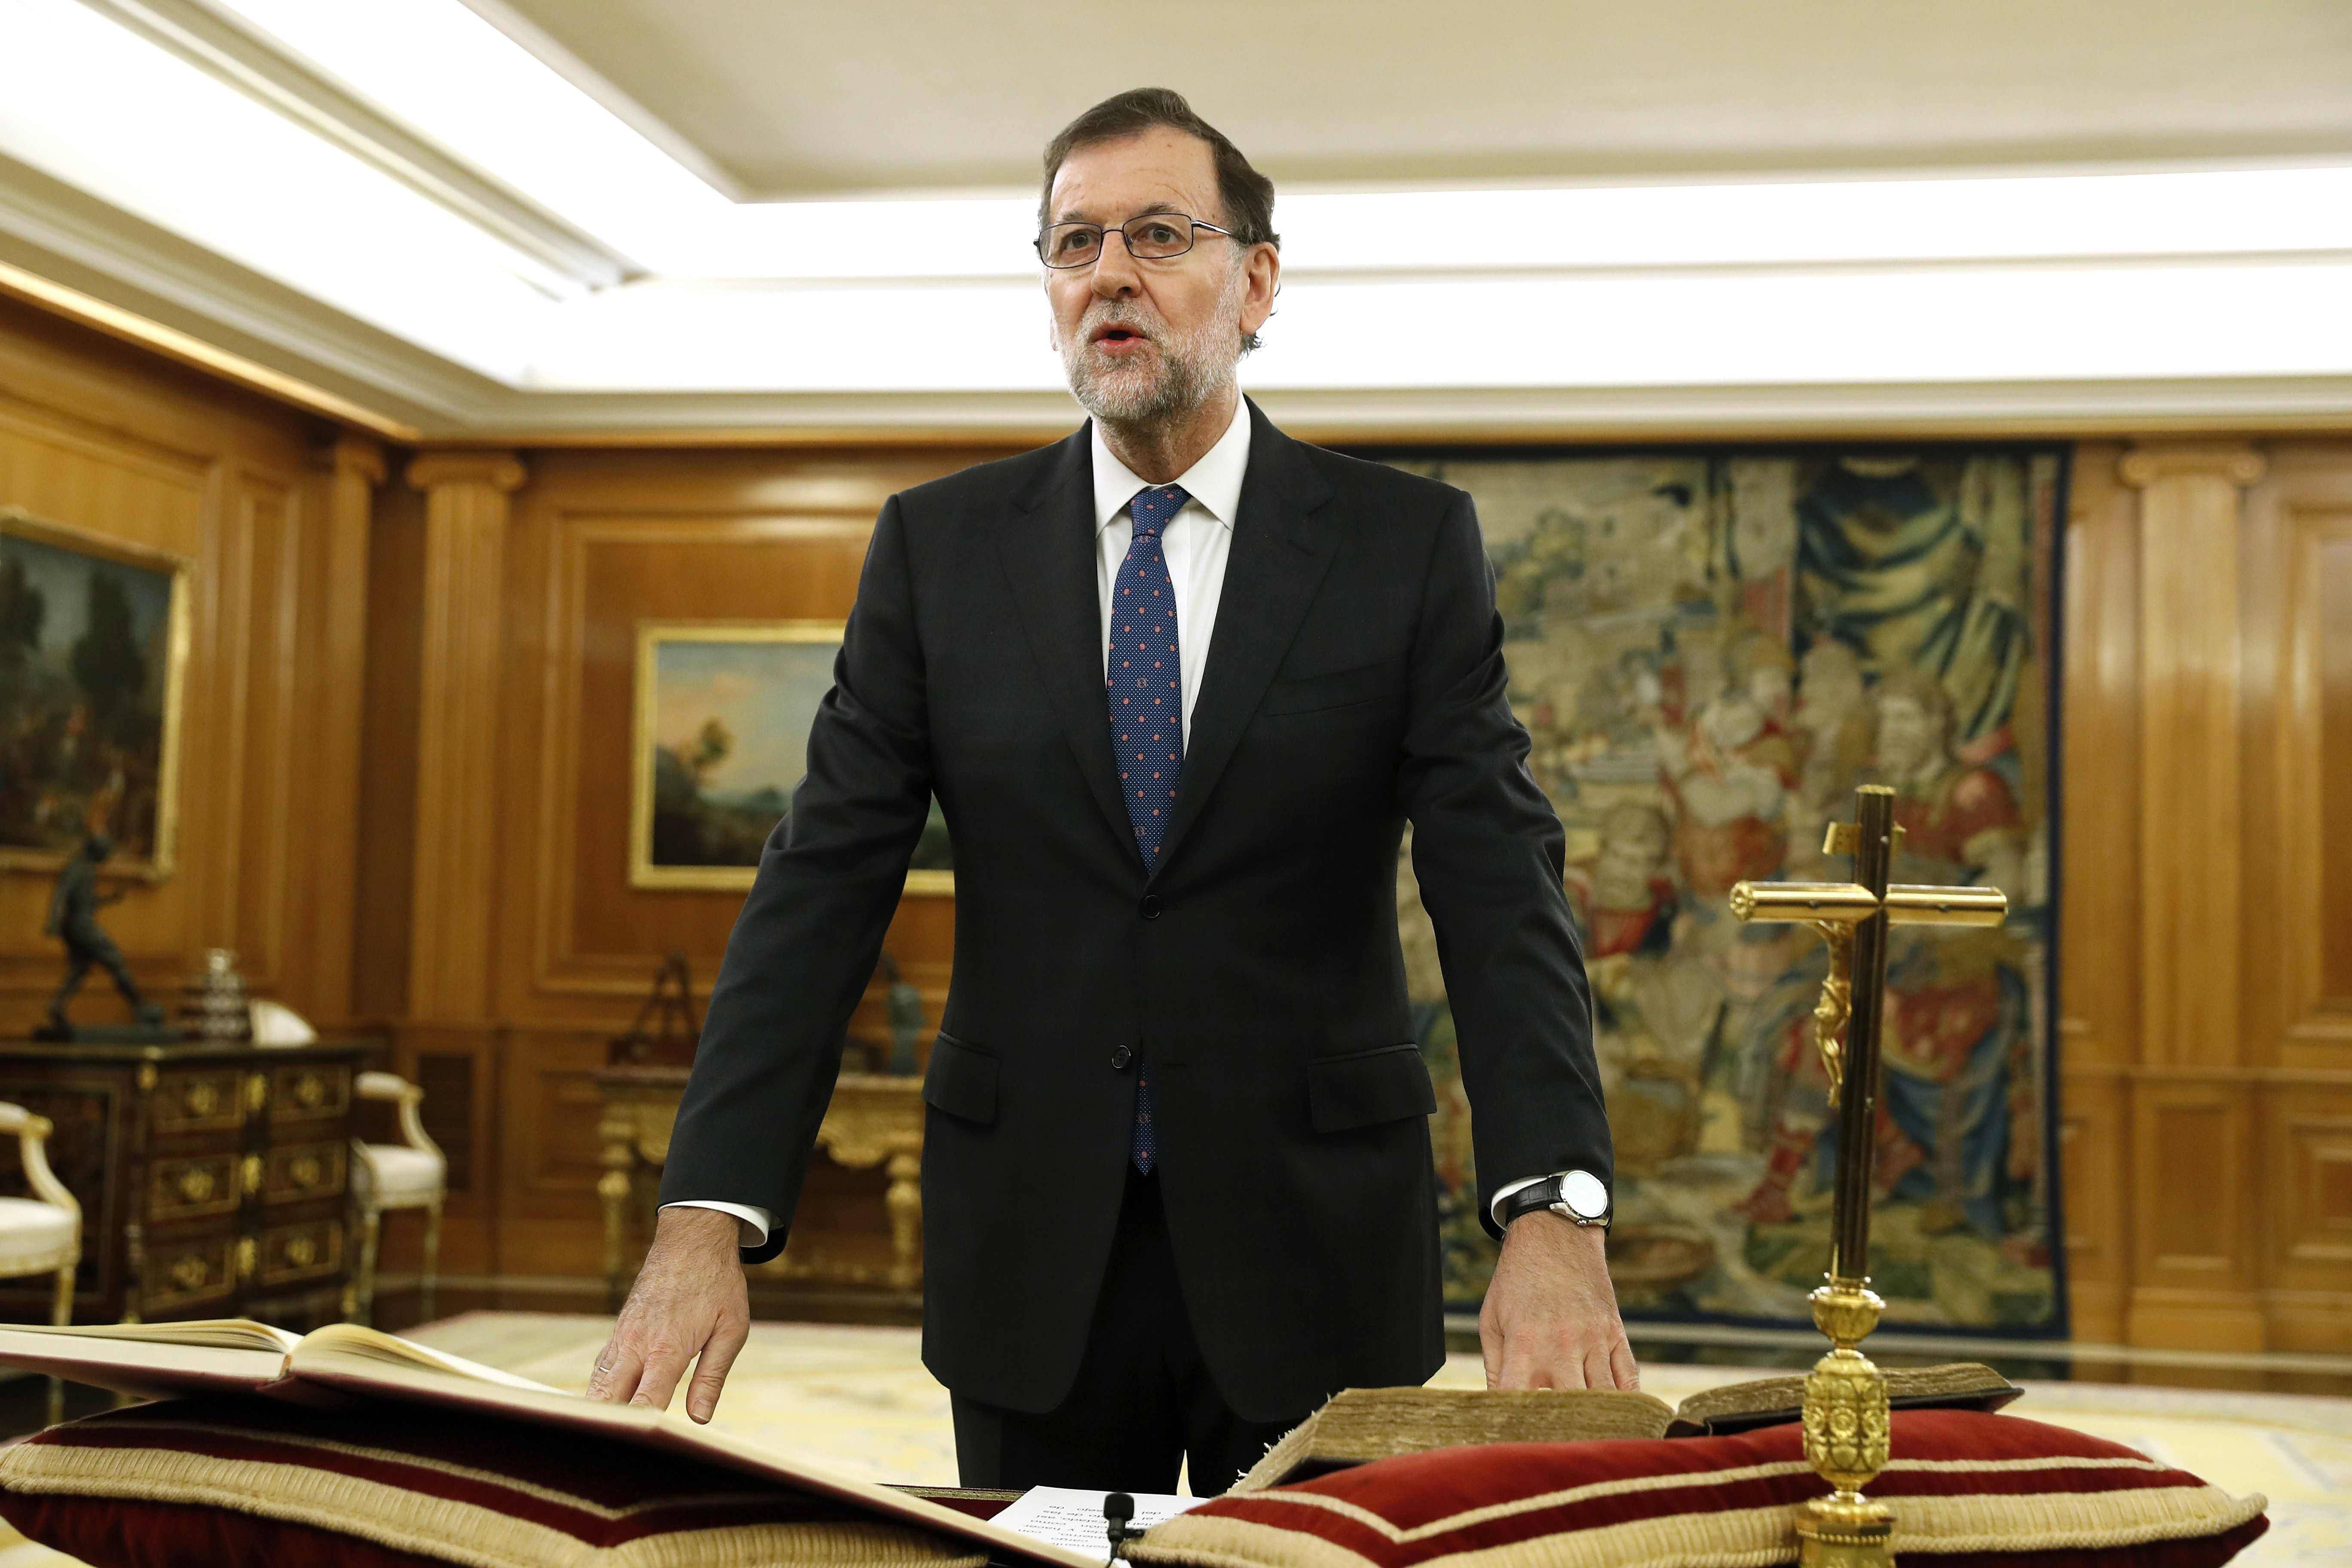 Mariano Rajoy jura como presidente y prepara su nuevo Gobierno en España